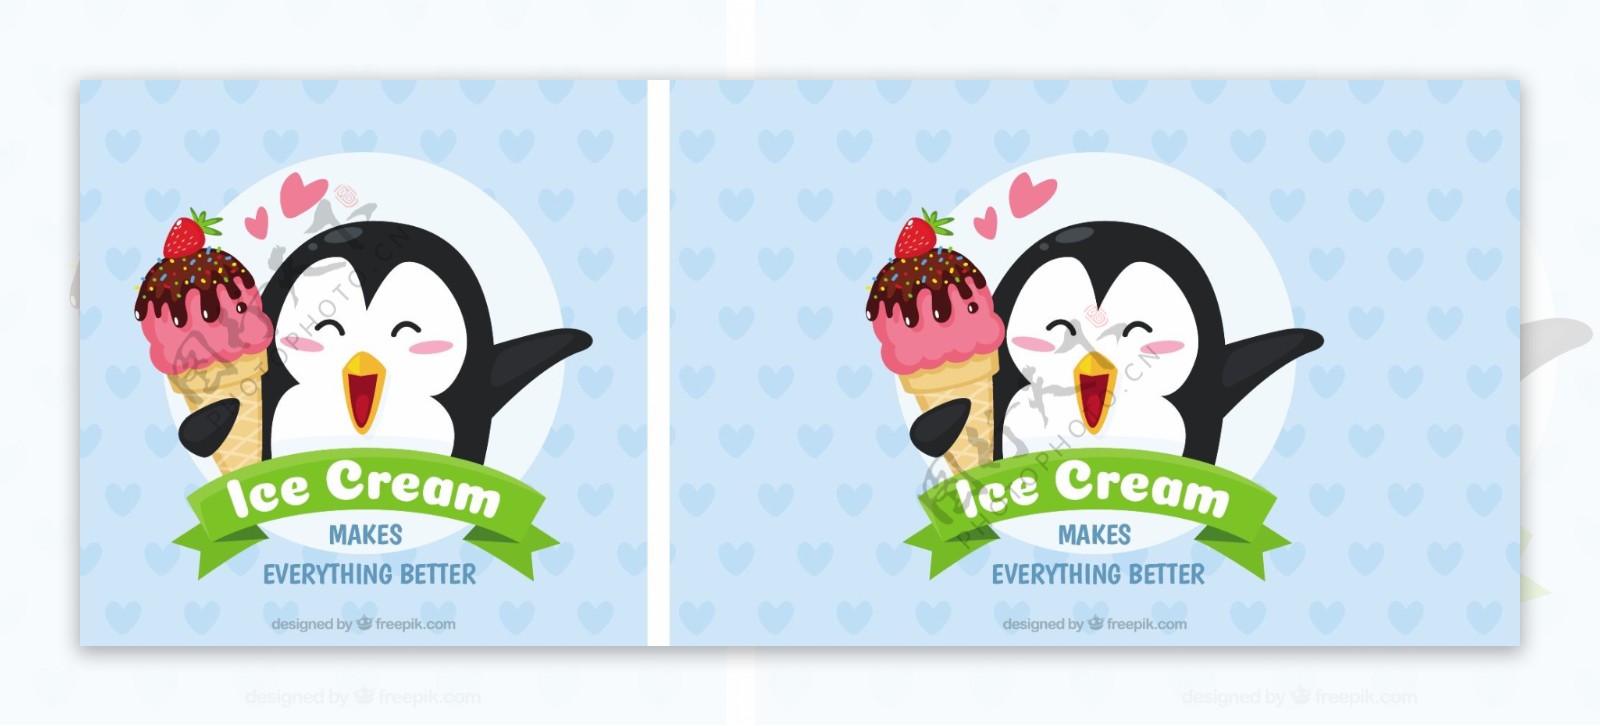 冰淇淋和可爱的企鹅蓝色背景